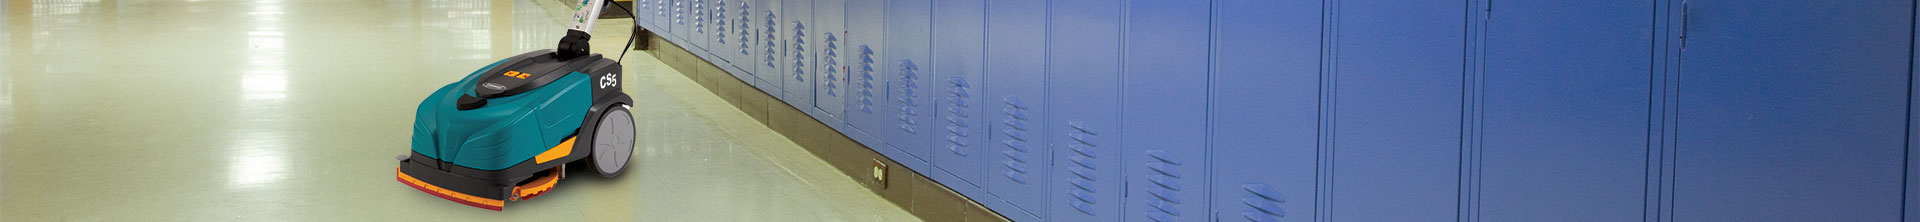 Micro-laveuse CS5 de Tennant nettoyant le couloir d’une école